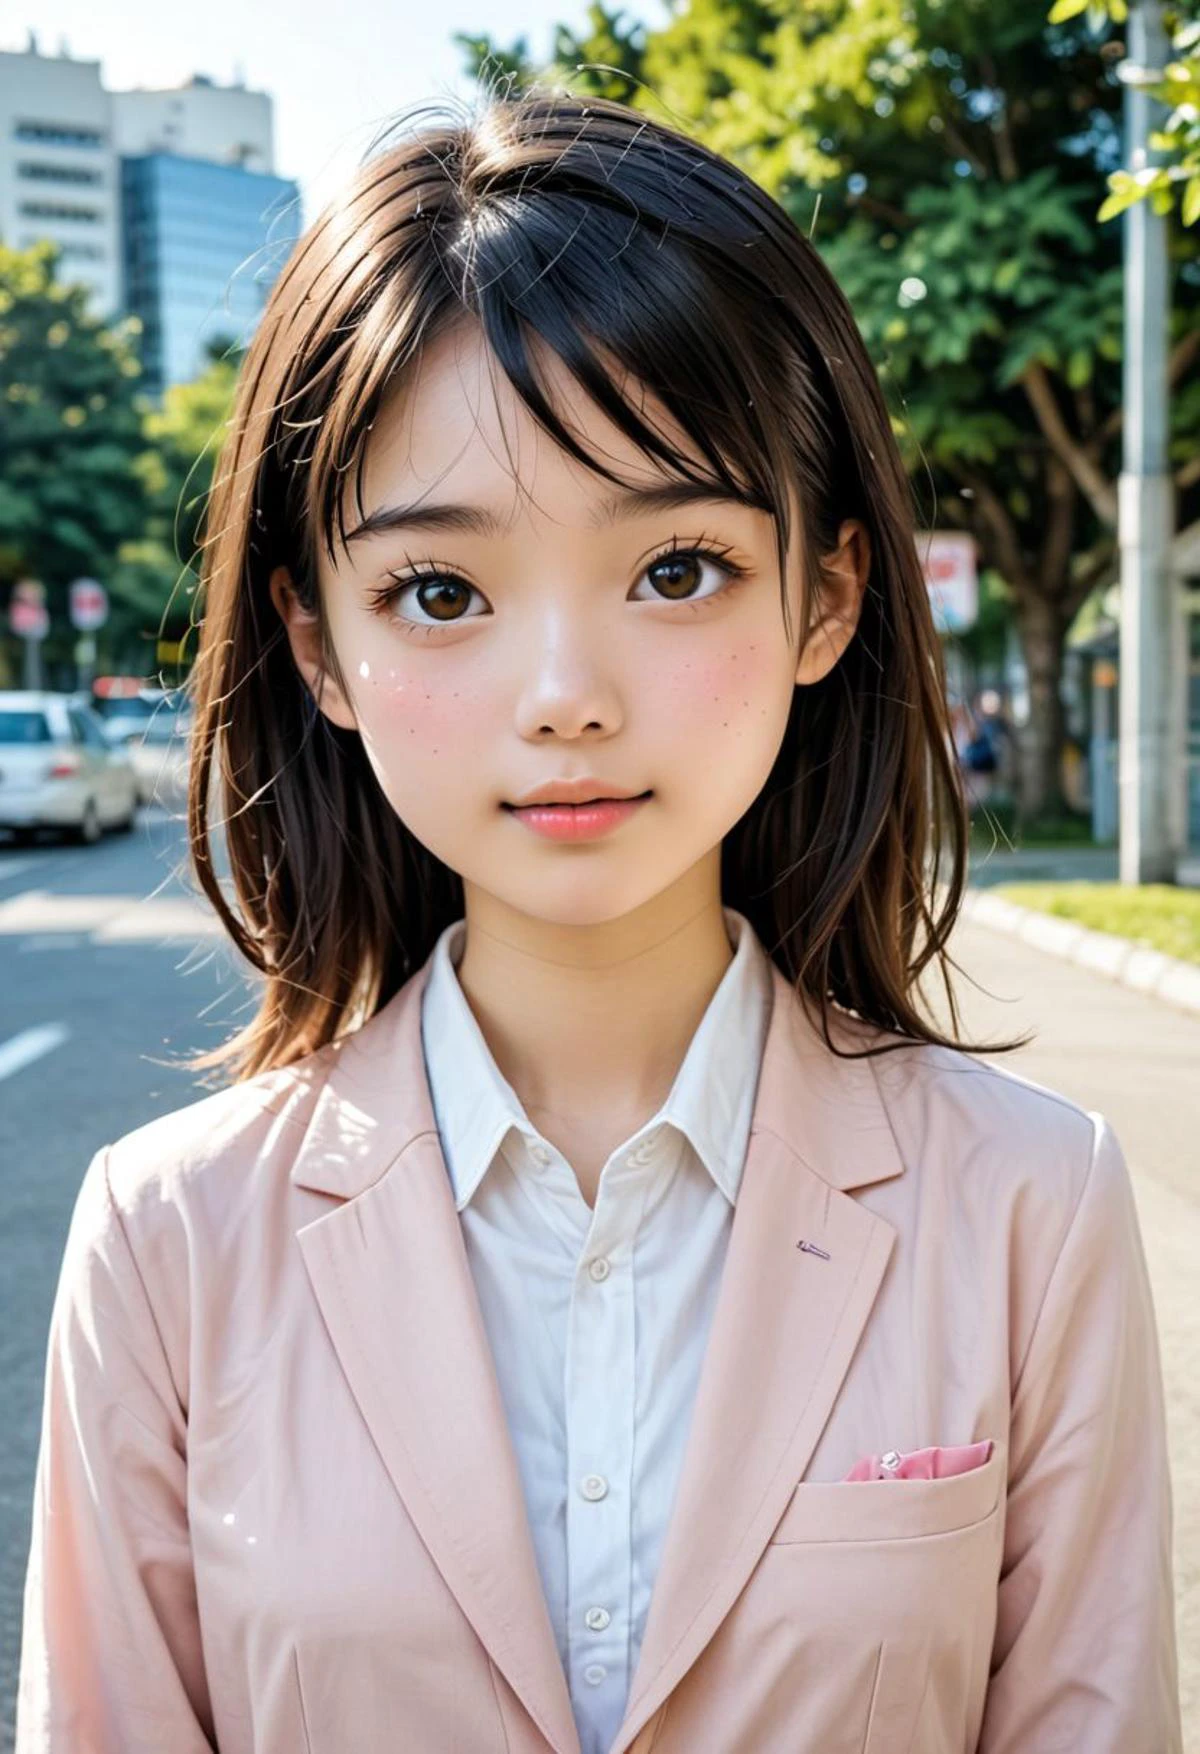 1個女孩, 18歲, 非常可愛(卡哇伊), 傑作, 最好的品質, 日本女孩,看著觀眾, 臉紅,在遊樂園.專業攝影, 高動態色彩範圍,高解析度圖片,原始照片. 日本女孩,